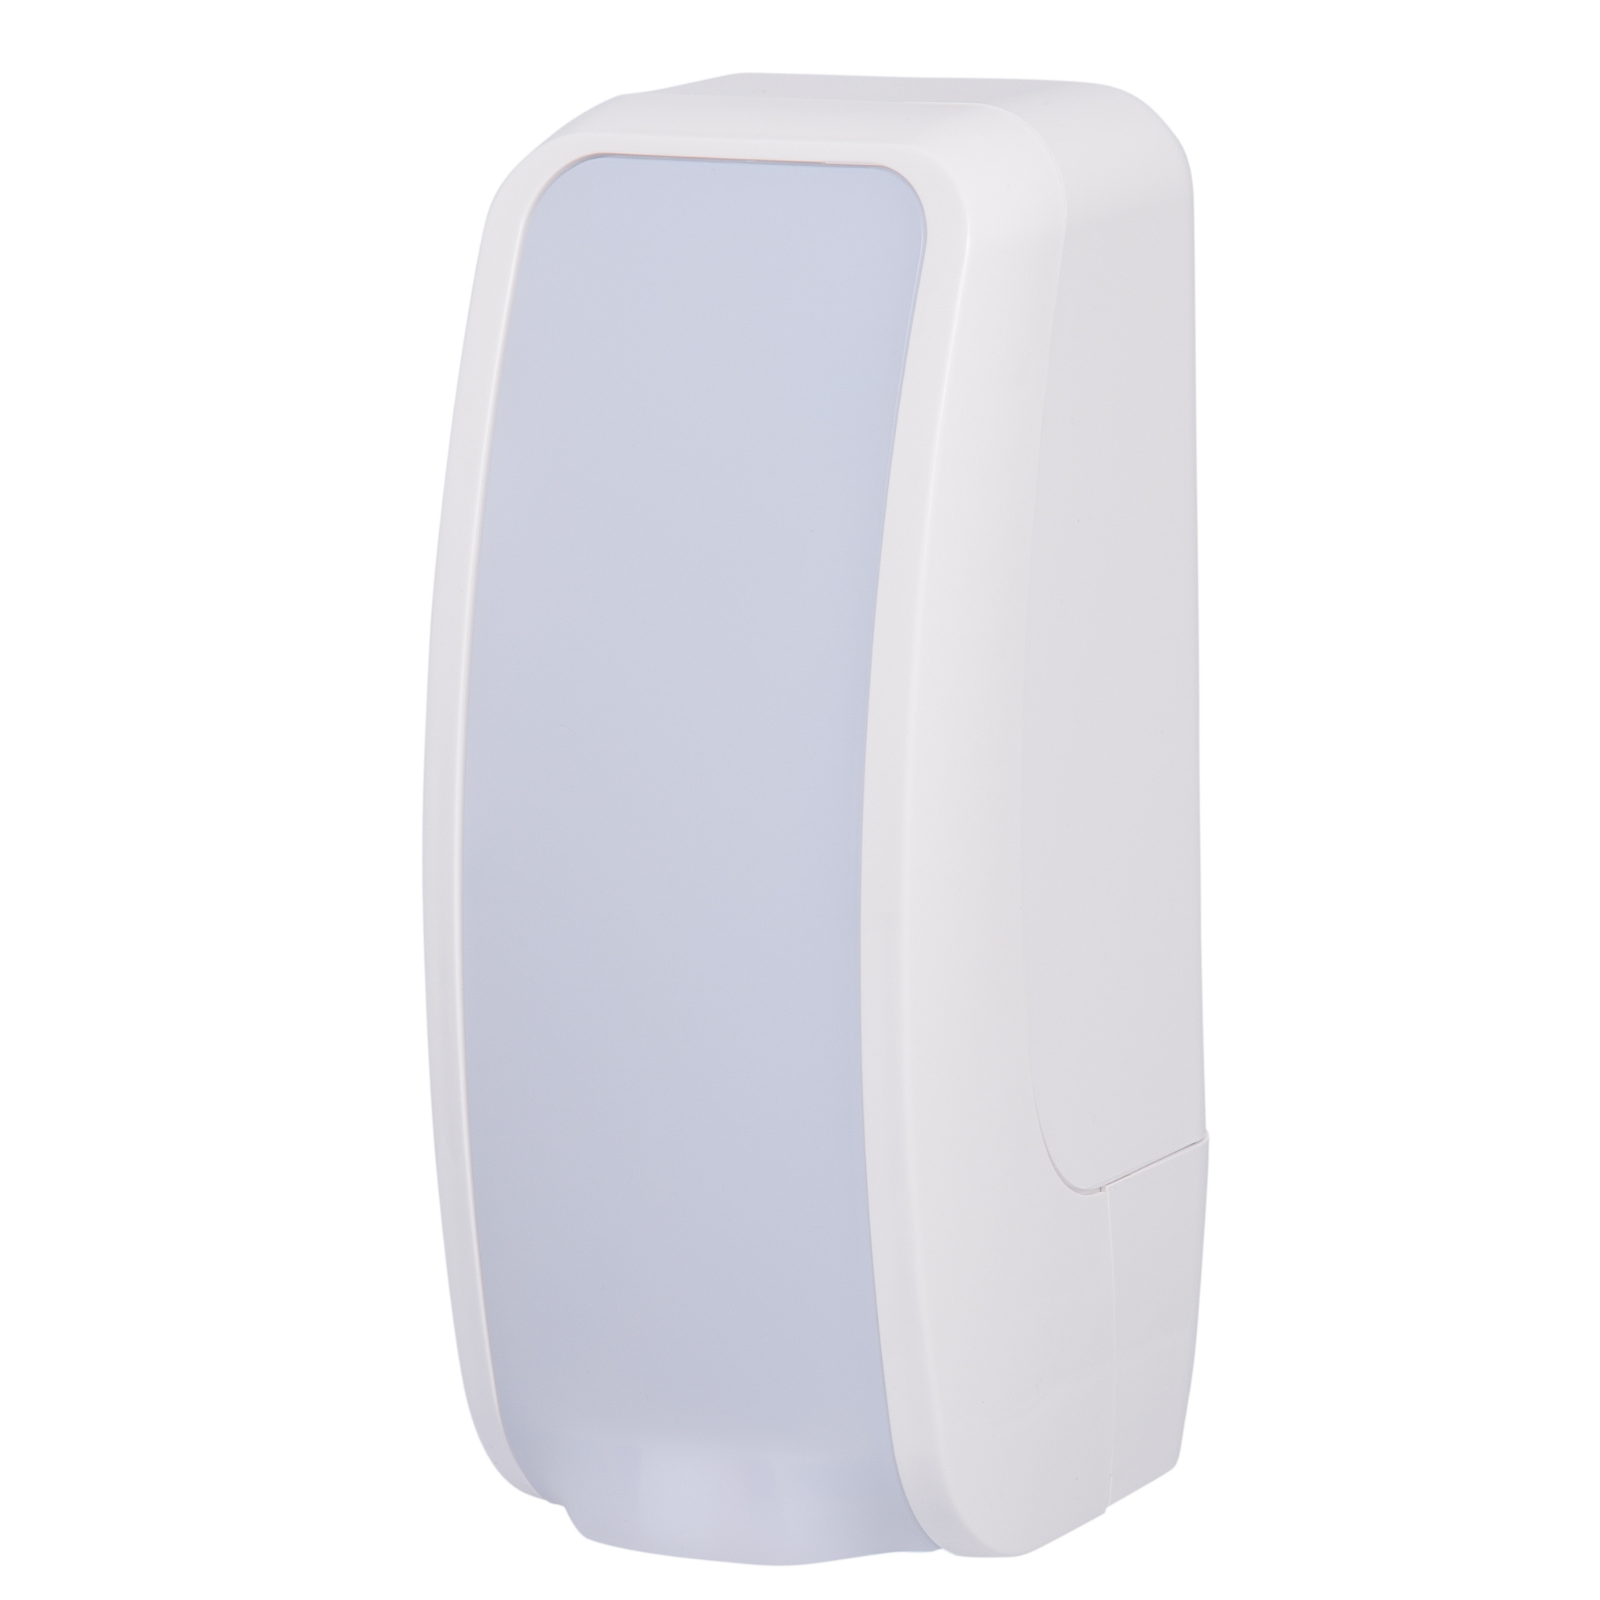 Pura - Foam Soap Dispenser - White/White